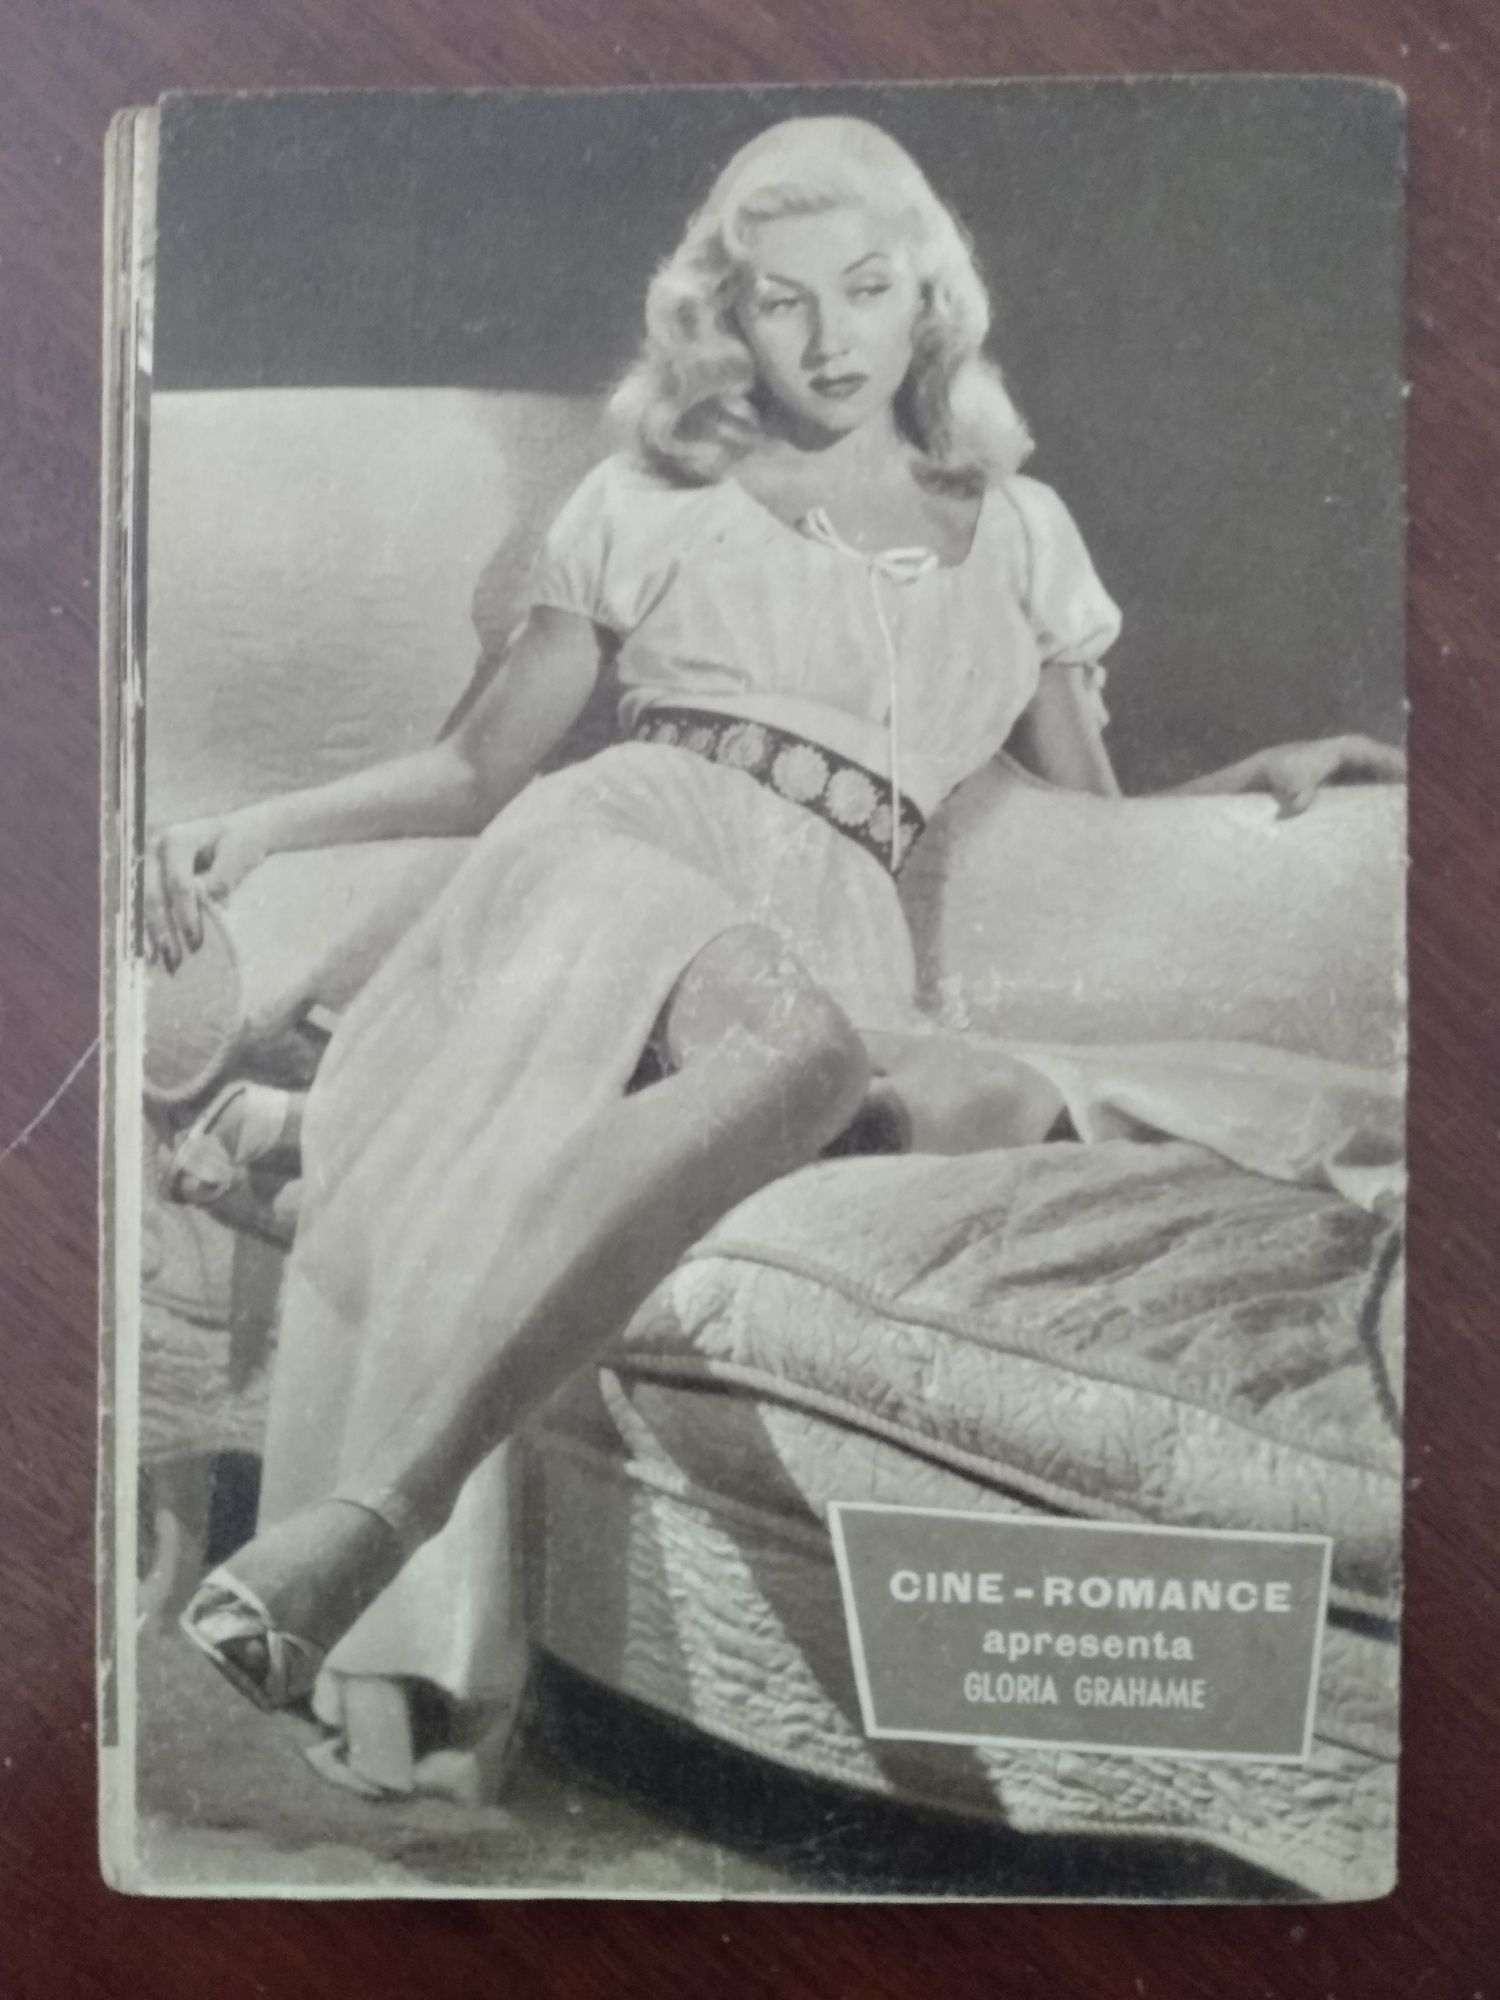 Revista Cine Romance dos anos 60